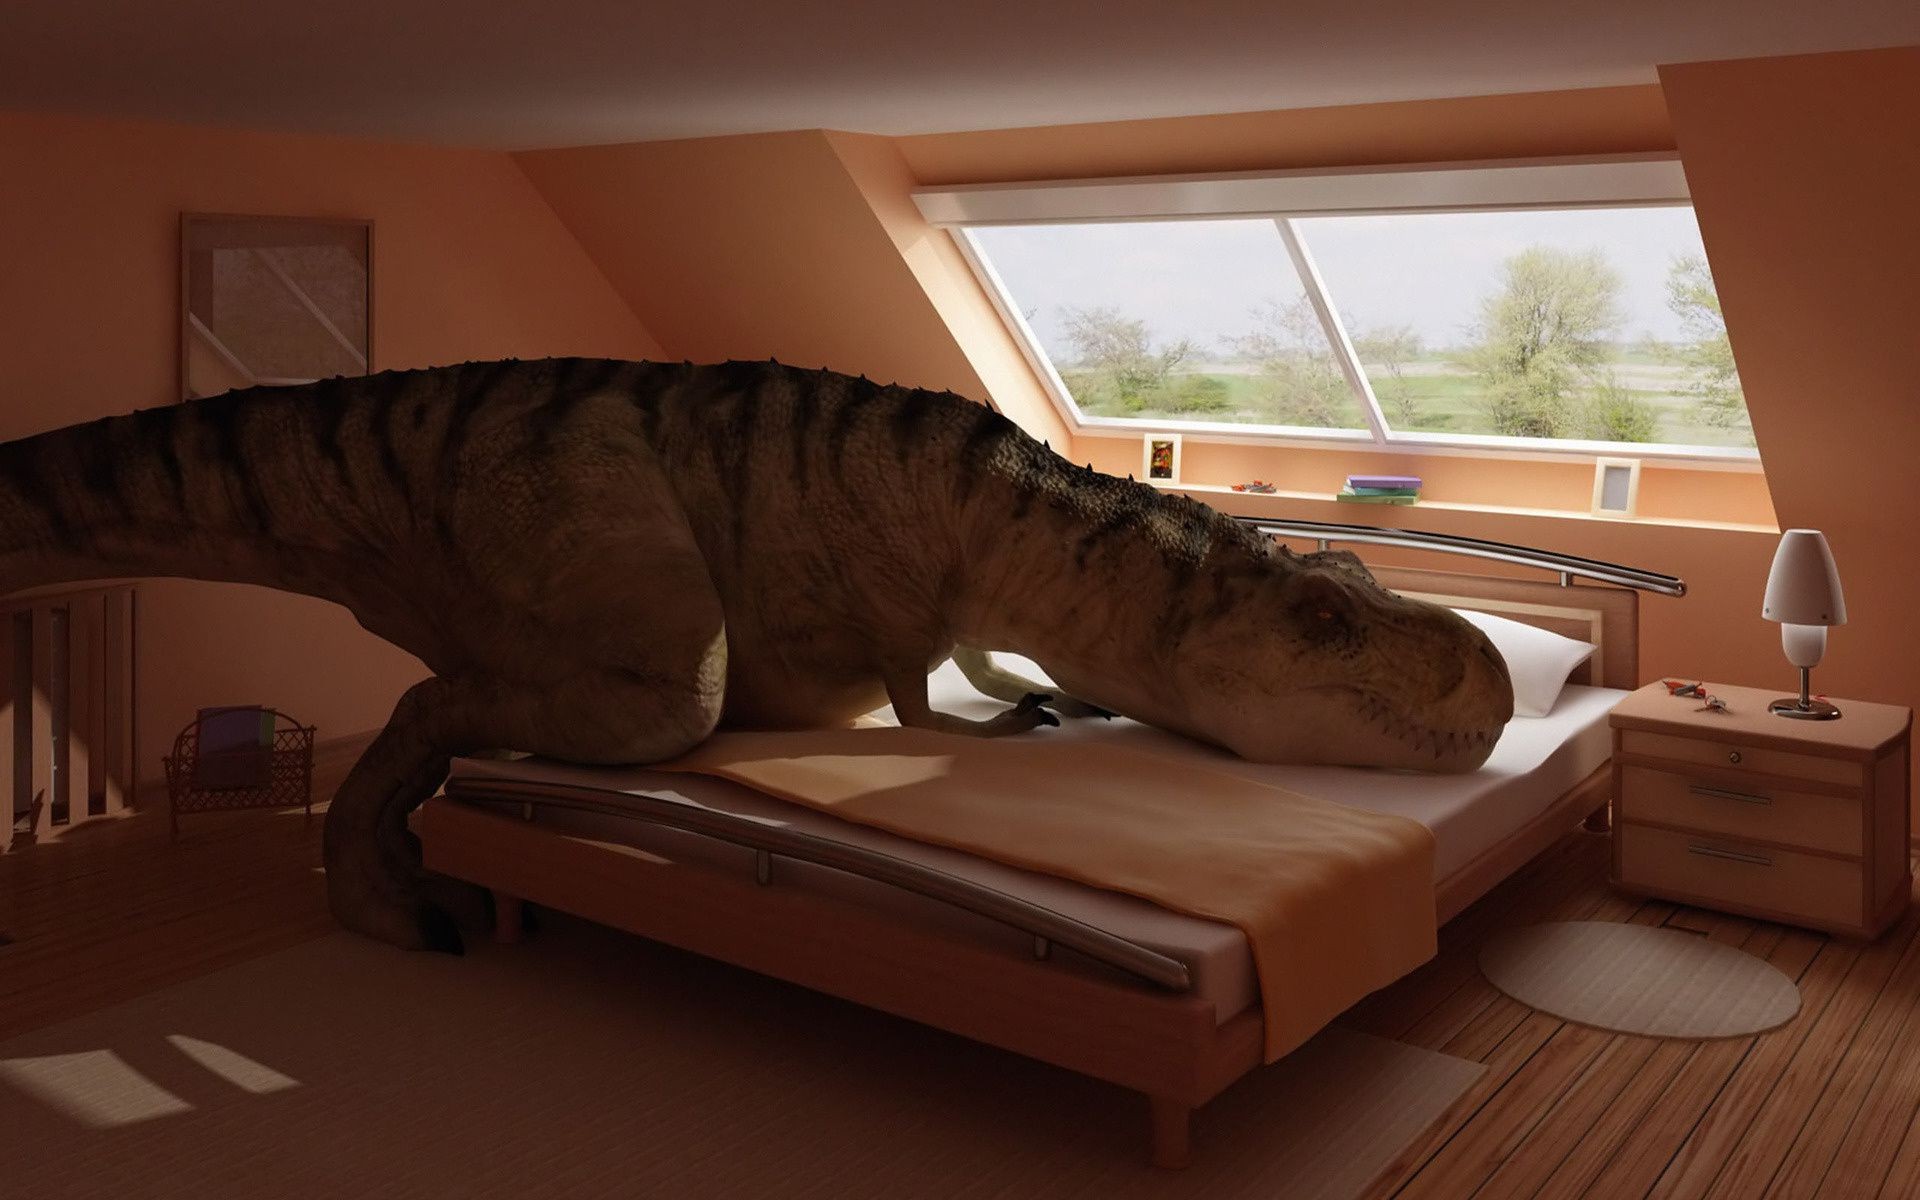 динозавры в помещении номер мебель окна диван место путешествия свет древесины